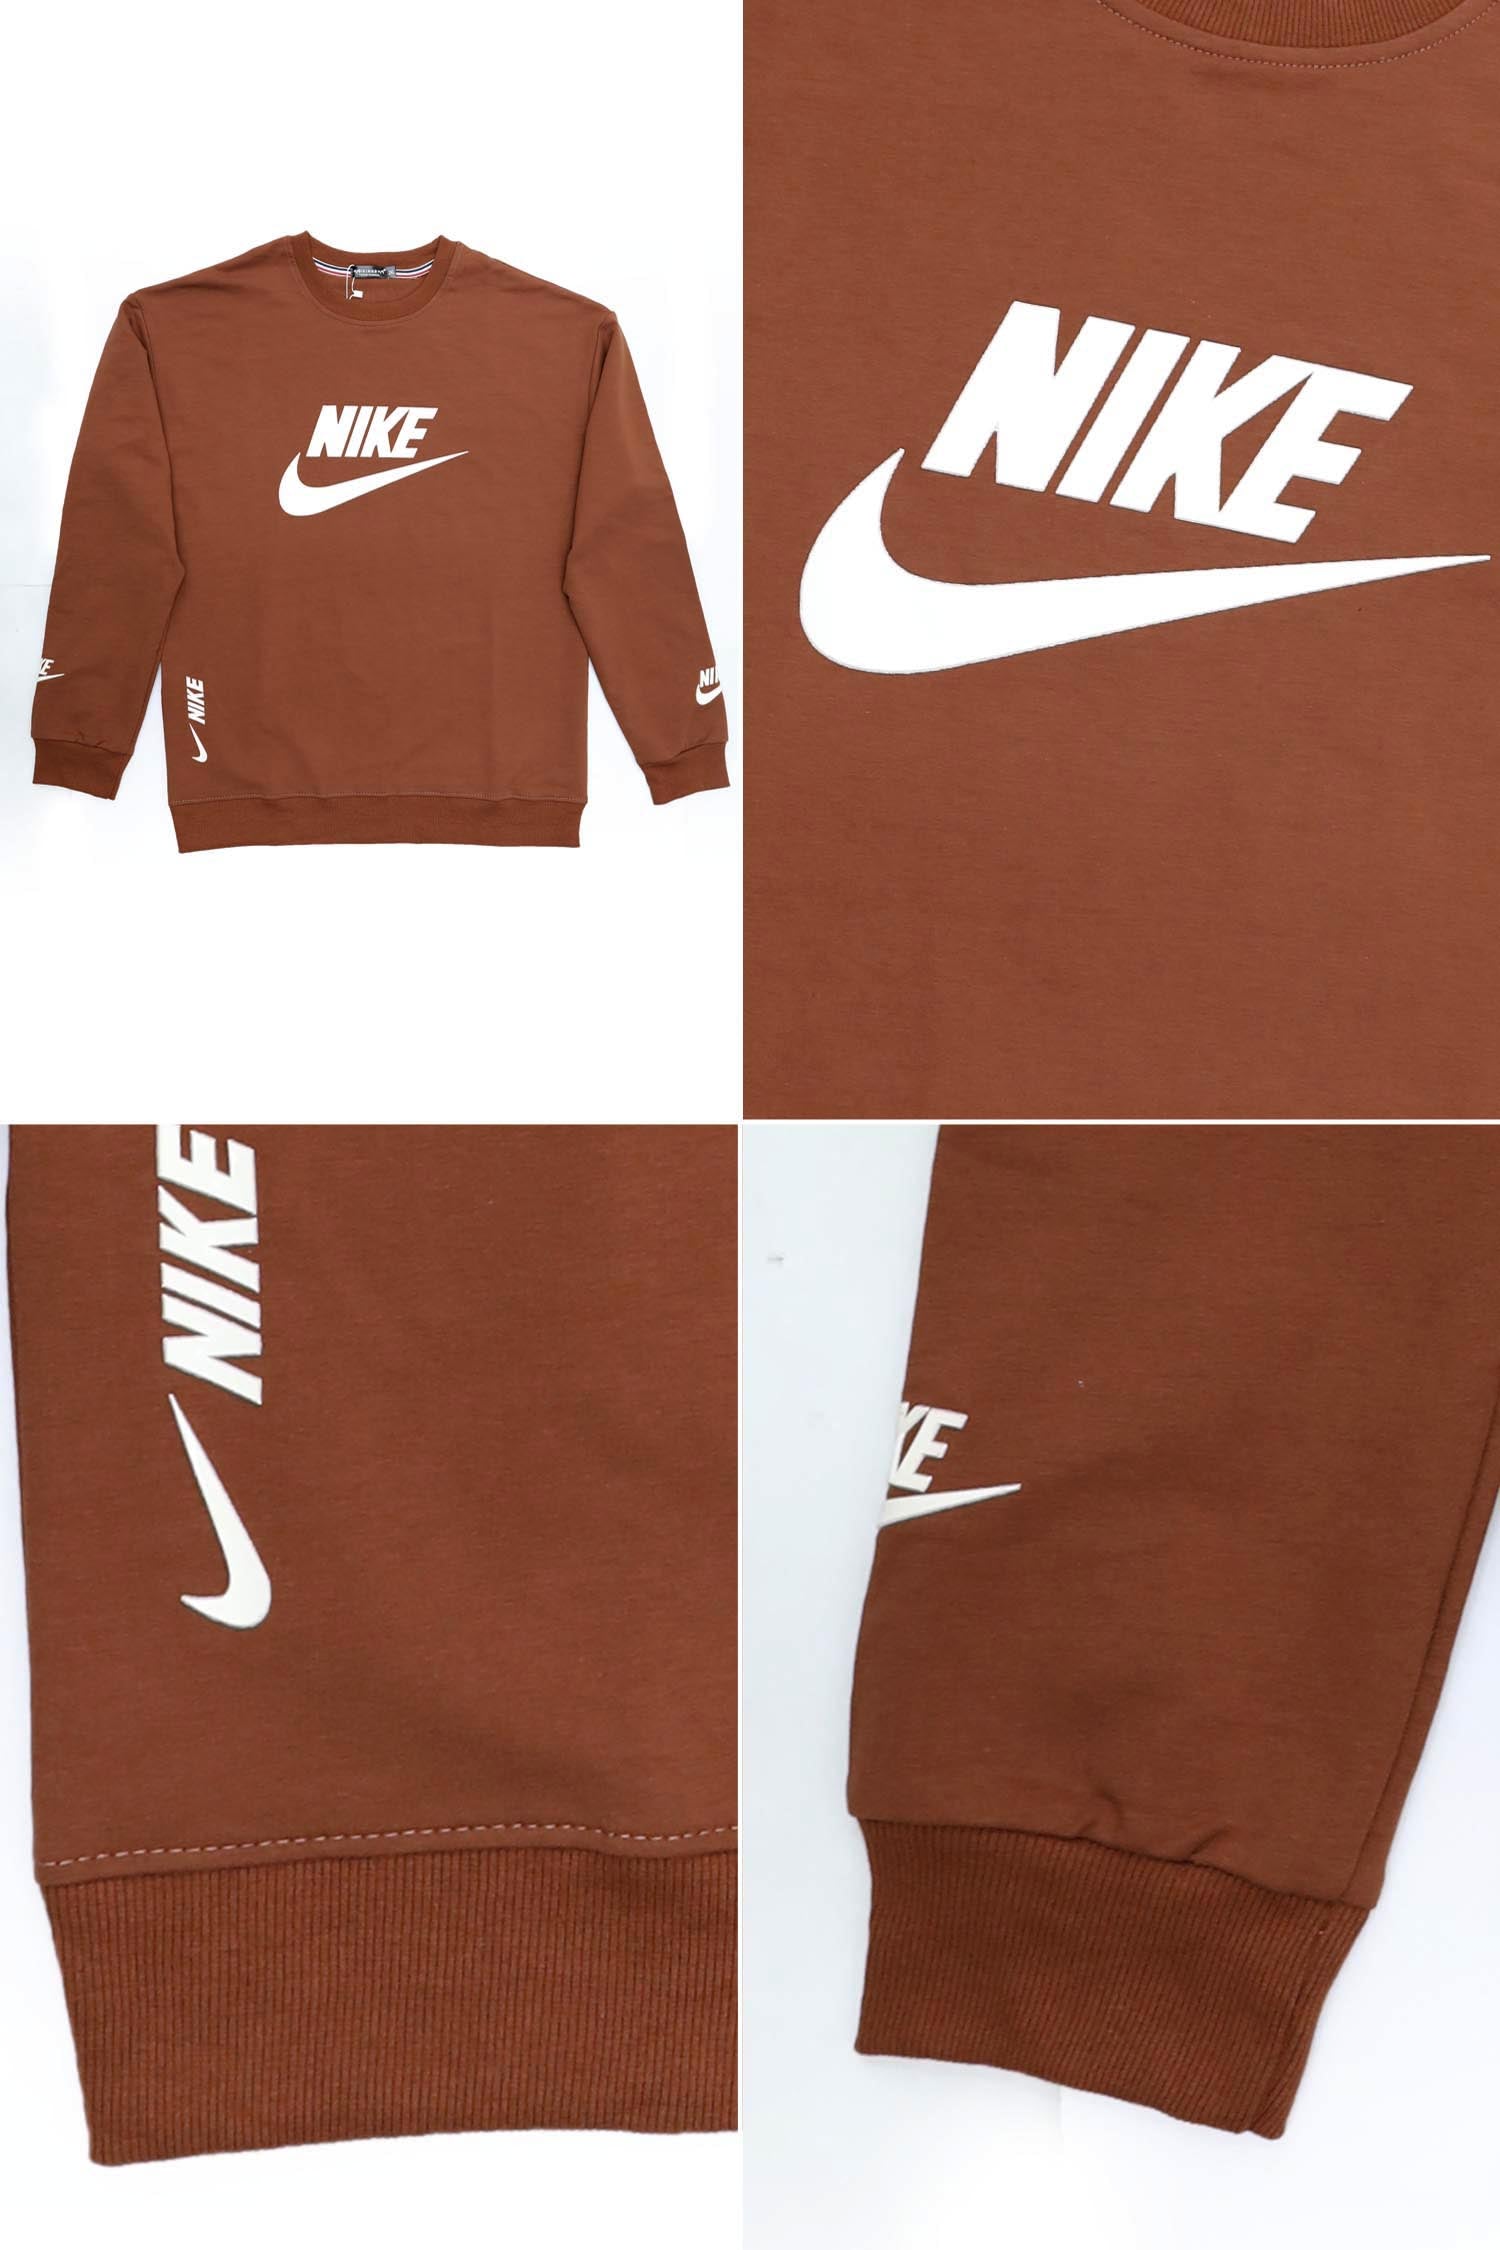 Nikee Branded Men's Sweatshirt